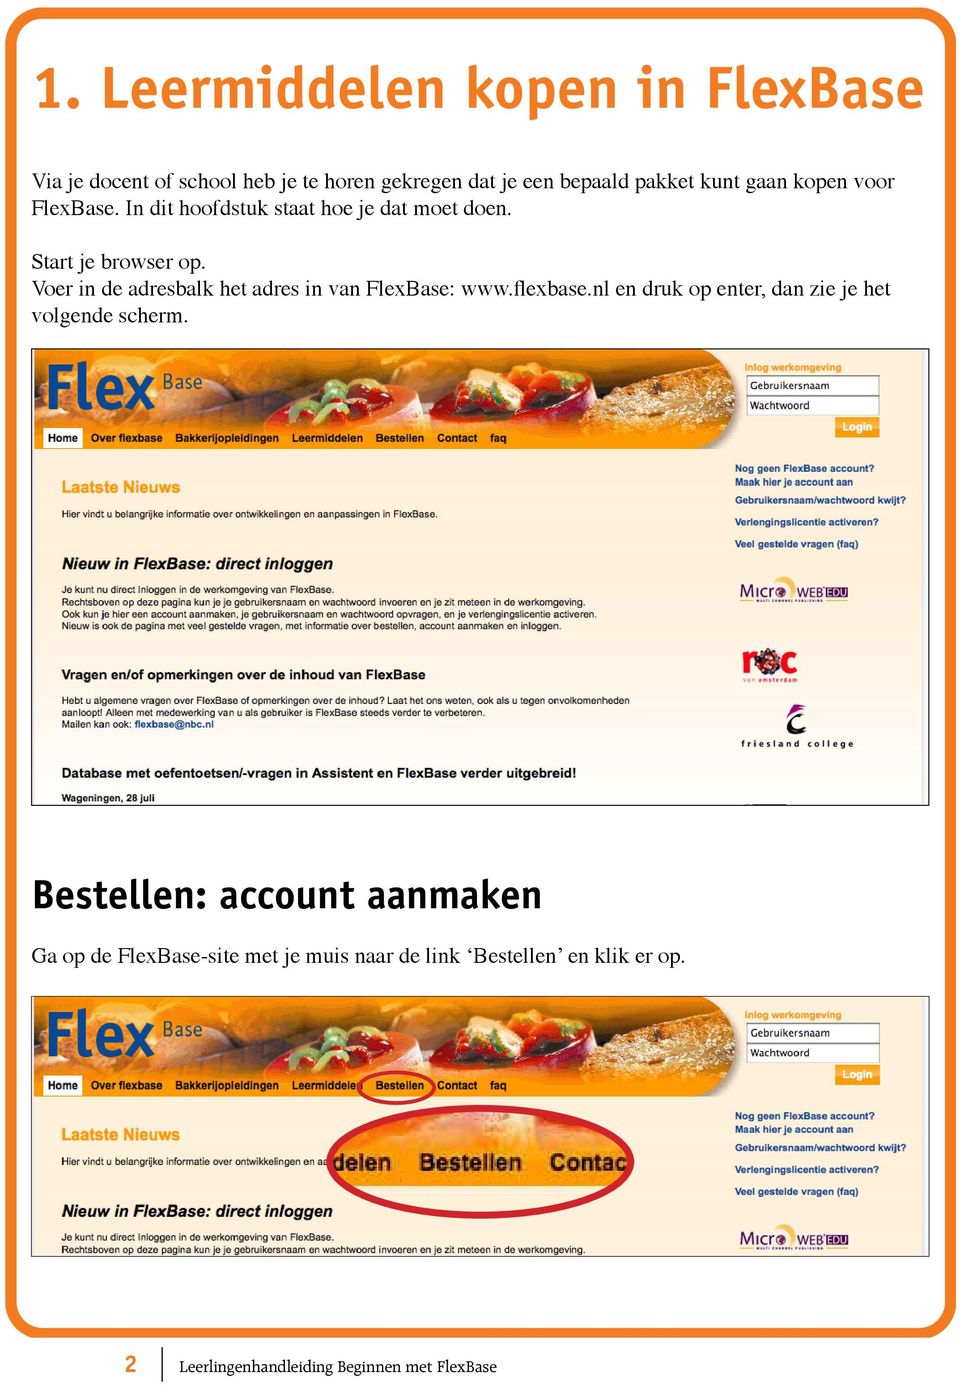 Voer in de adresbalk het adres in van FlexBase: www.flexbase.nl en druk op enter, dan zie je het volgende scherm.